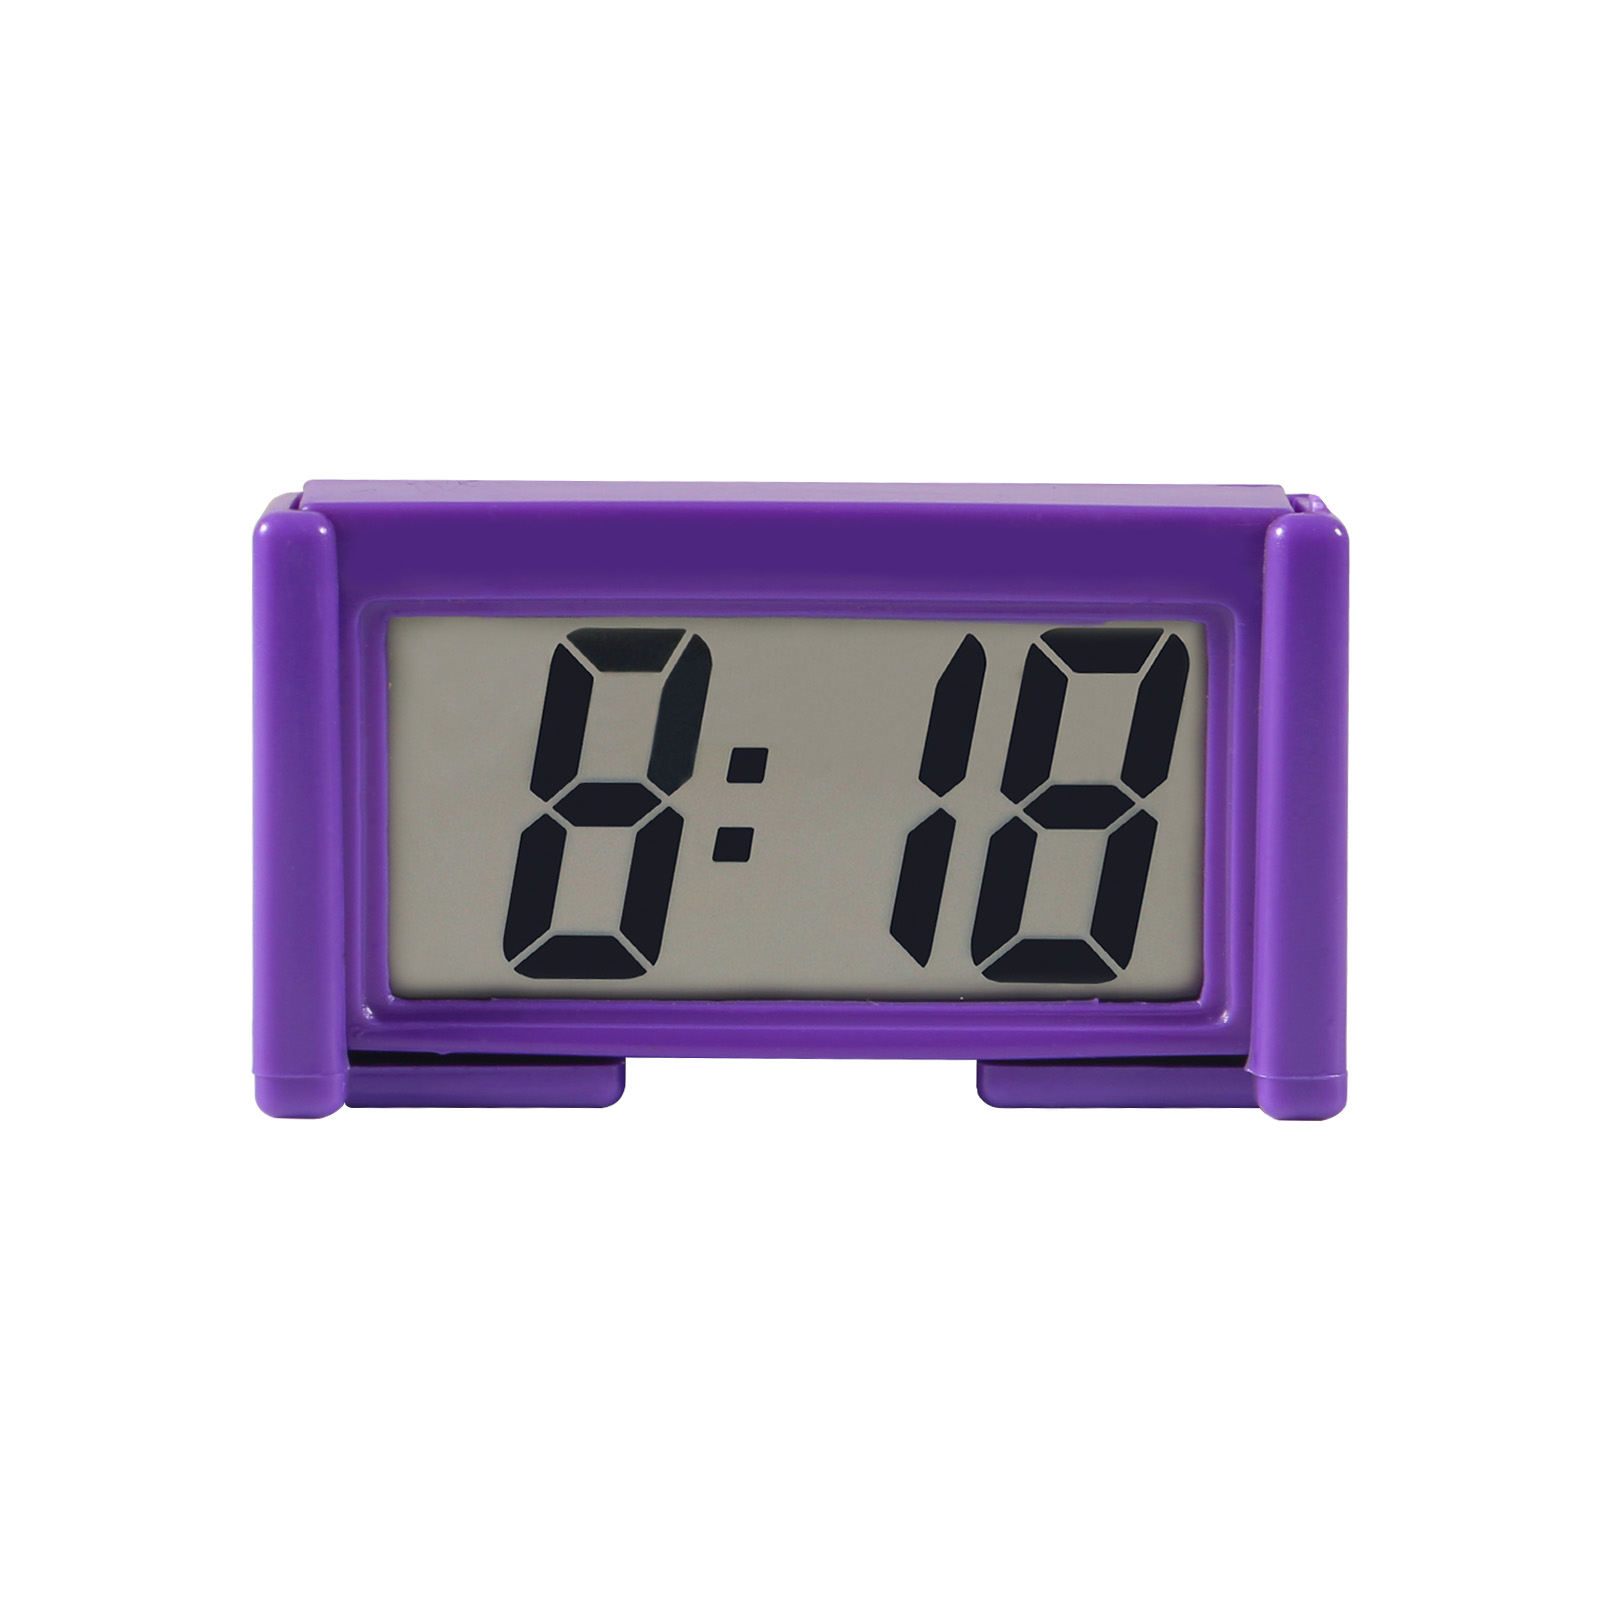 Limily Bbtoo Horloge numérique pour voiture - Petite horloge